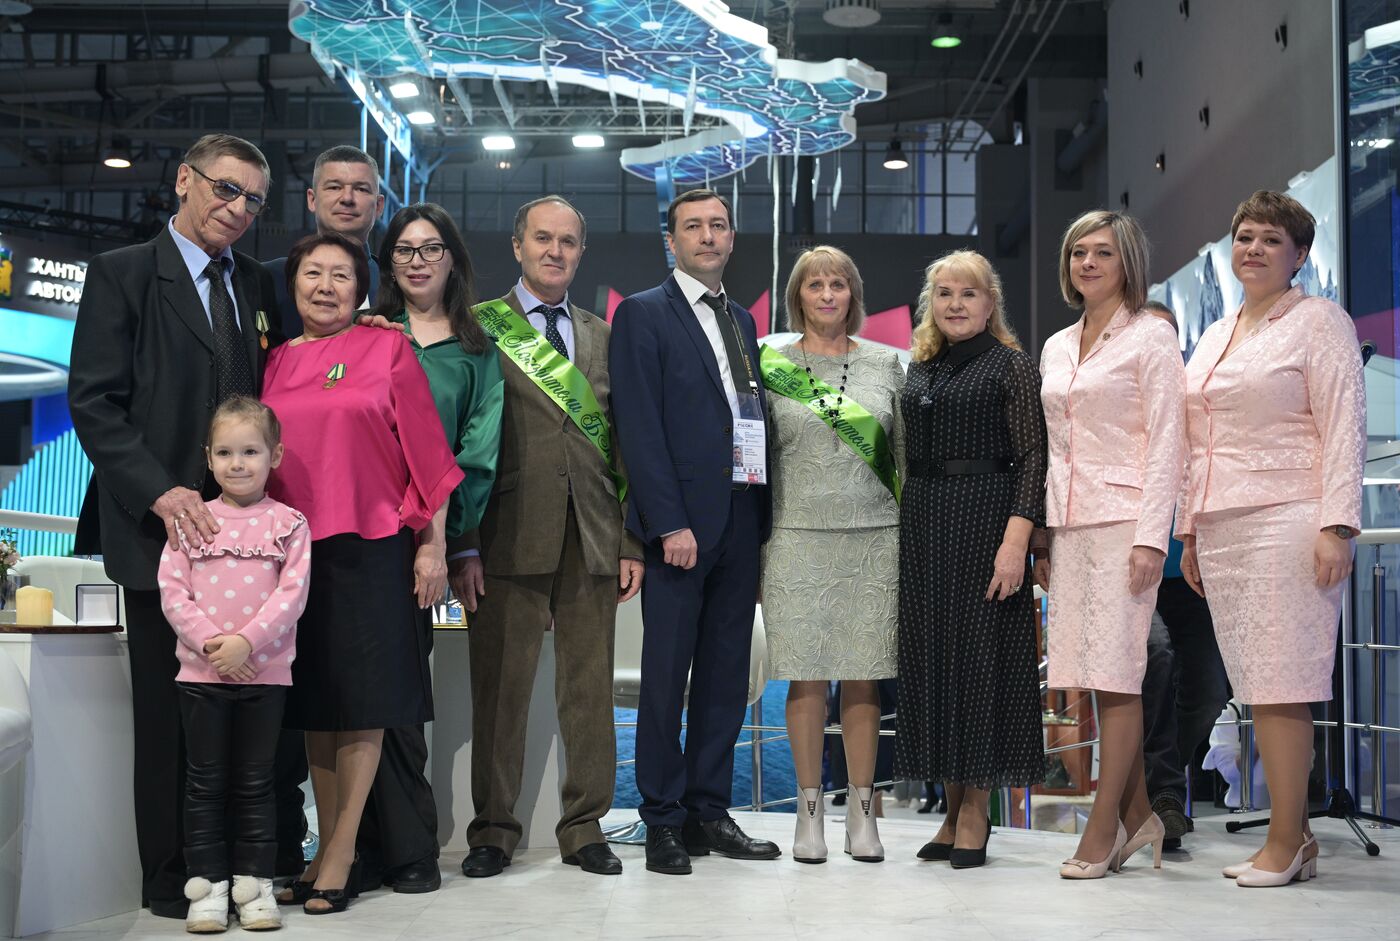 Выставка "Россия". Поздравление юбиляров супружеской жизни - строителей БАМа